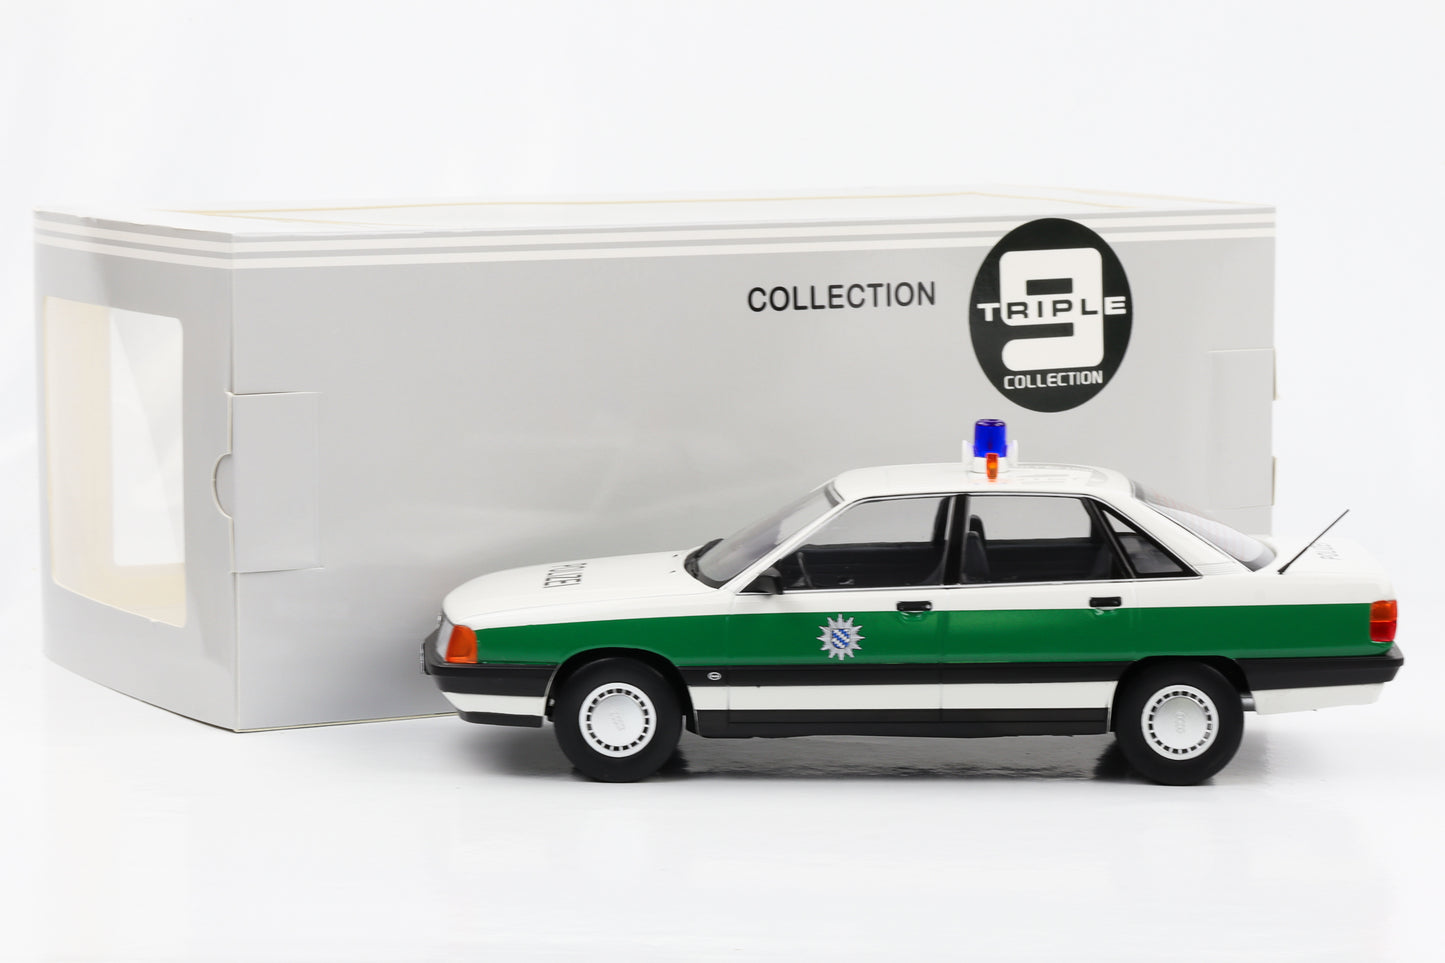 1:18 أودي 100 C3 2.3E 1989 الشرطة الألمانية أبيض-أخضر تريبل 9 دييكاست